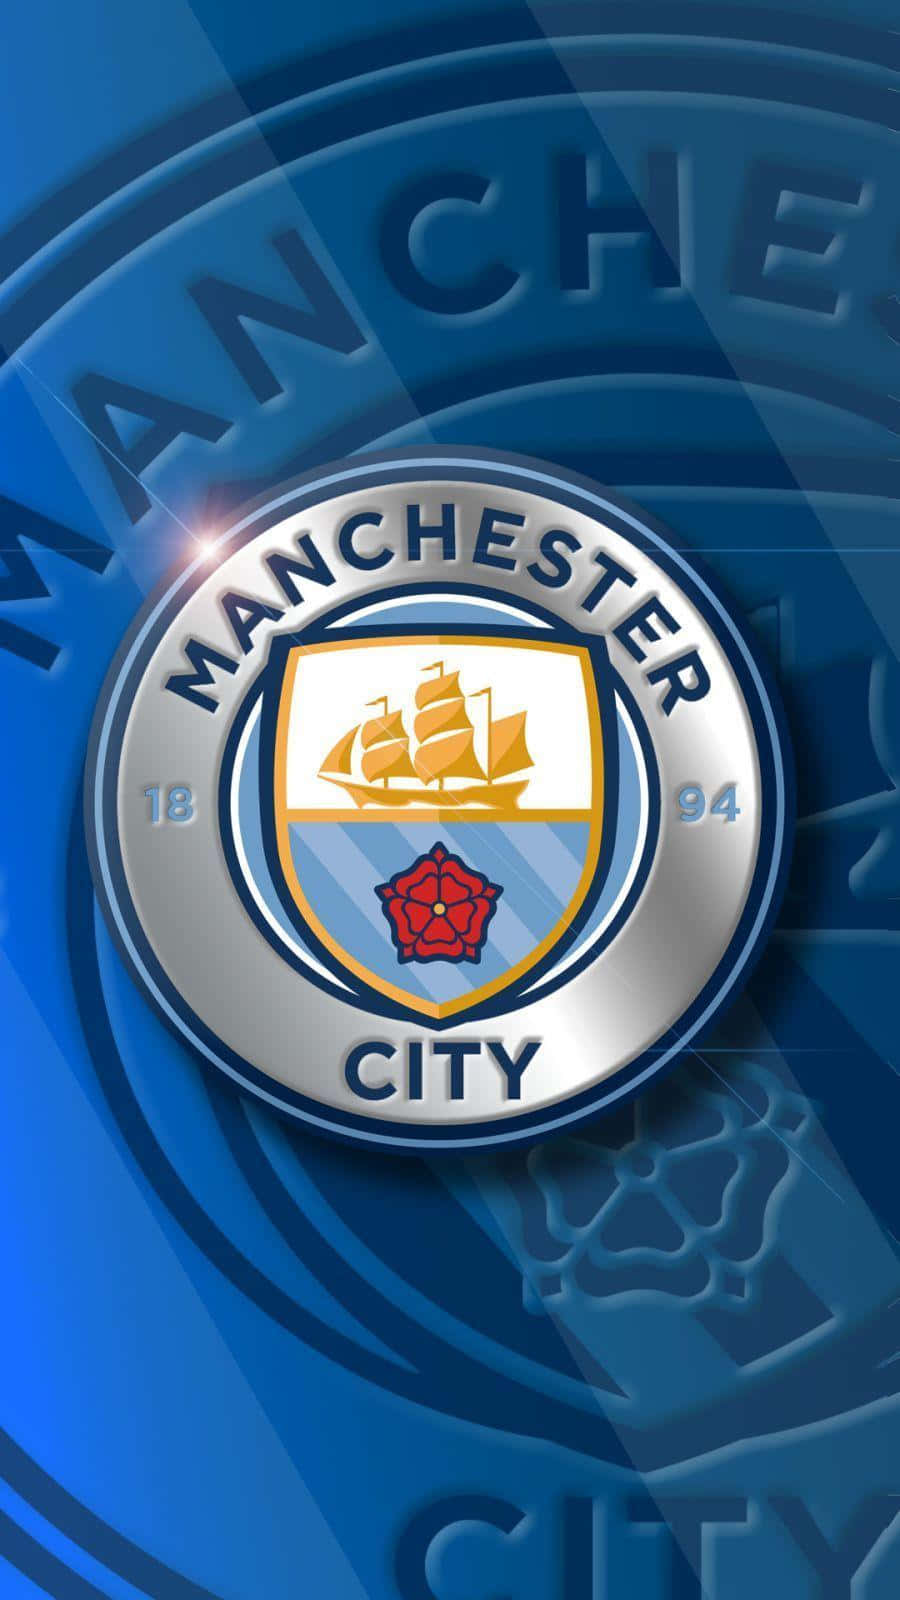 Sienteel Poder De Manchester City En Tu Iphone. Fondo de pantalla